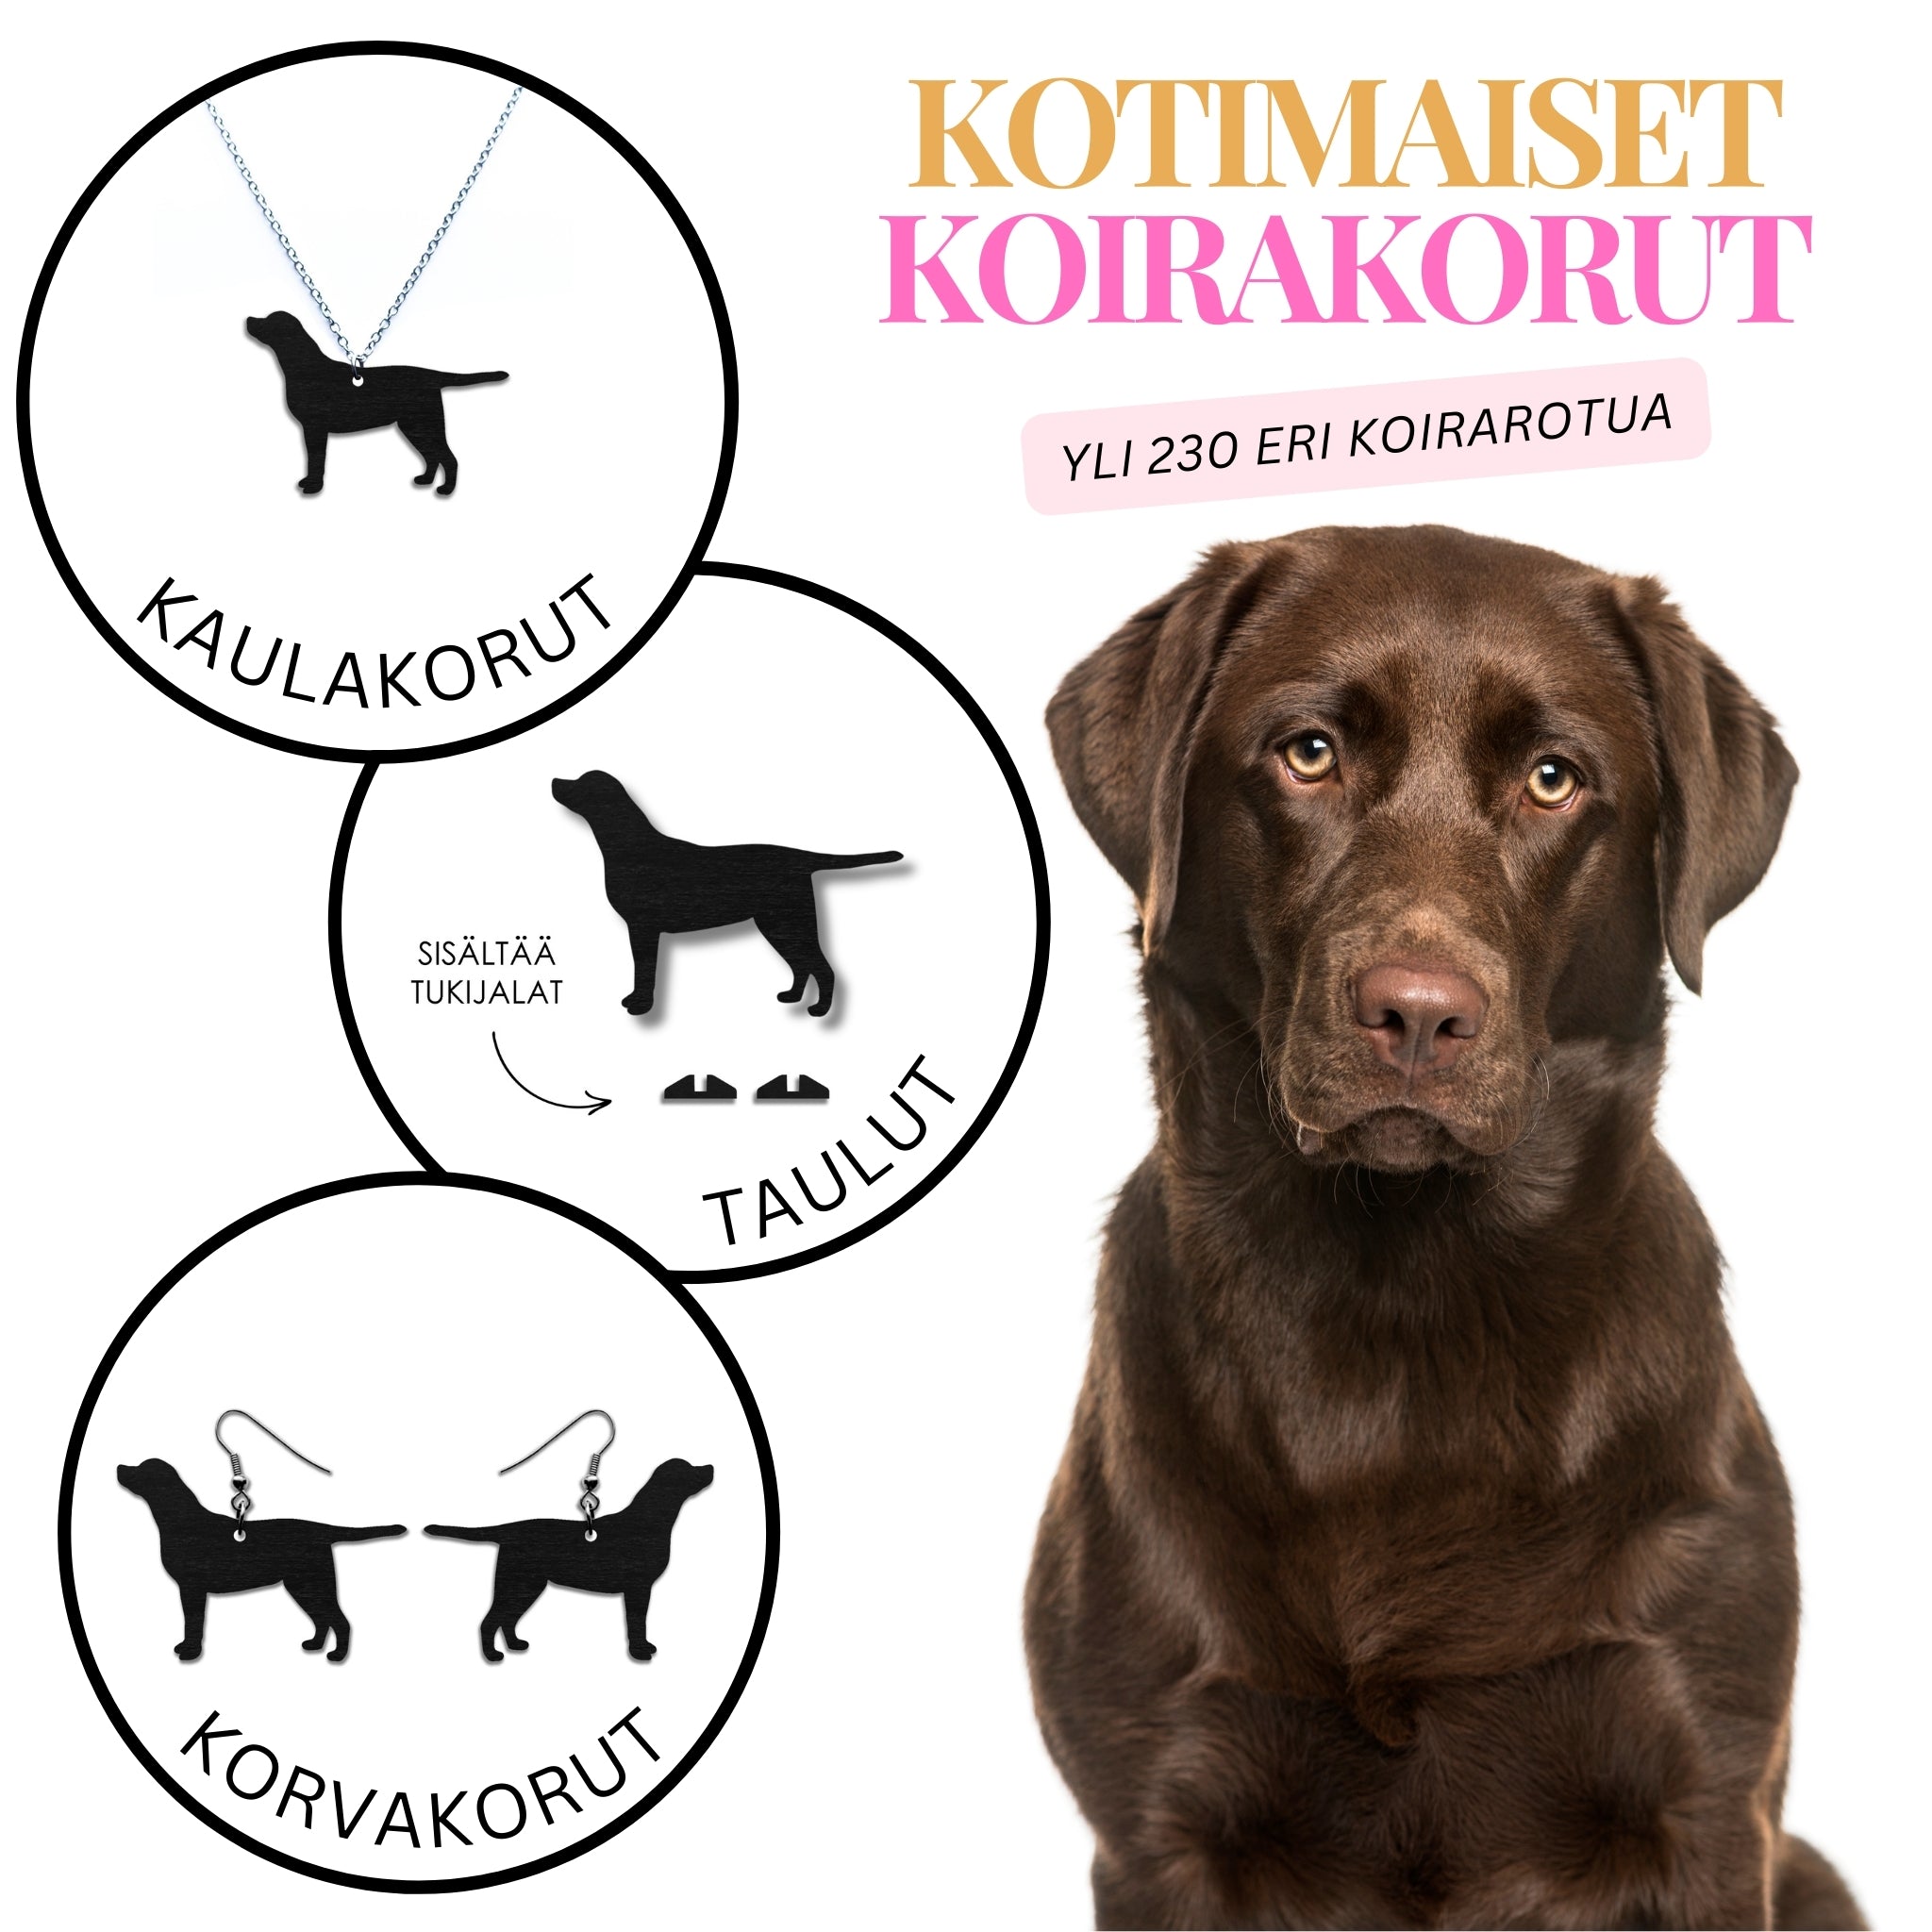 Kotimaiset koira-aiheiset labradorinnoutaja korvakorut, kaulakorut ja sisustustuotteet. Valmistettu Suomessa kotimaisesta koivuvanerista.